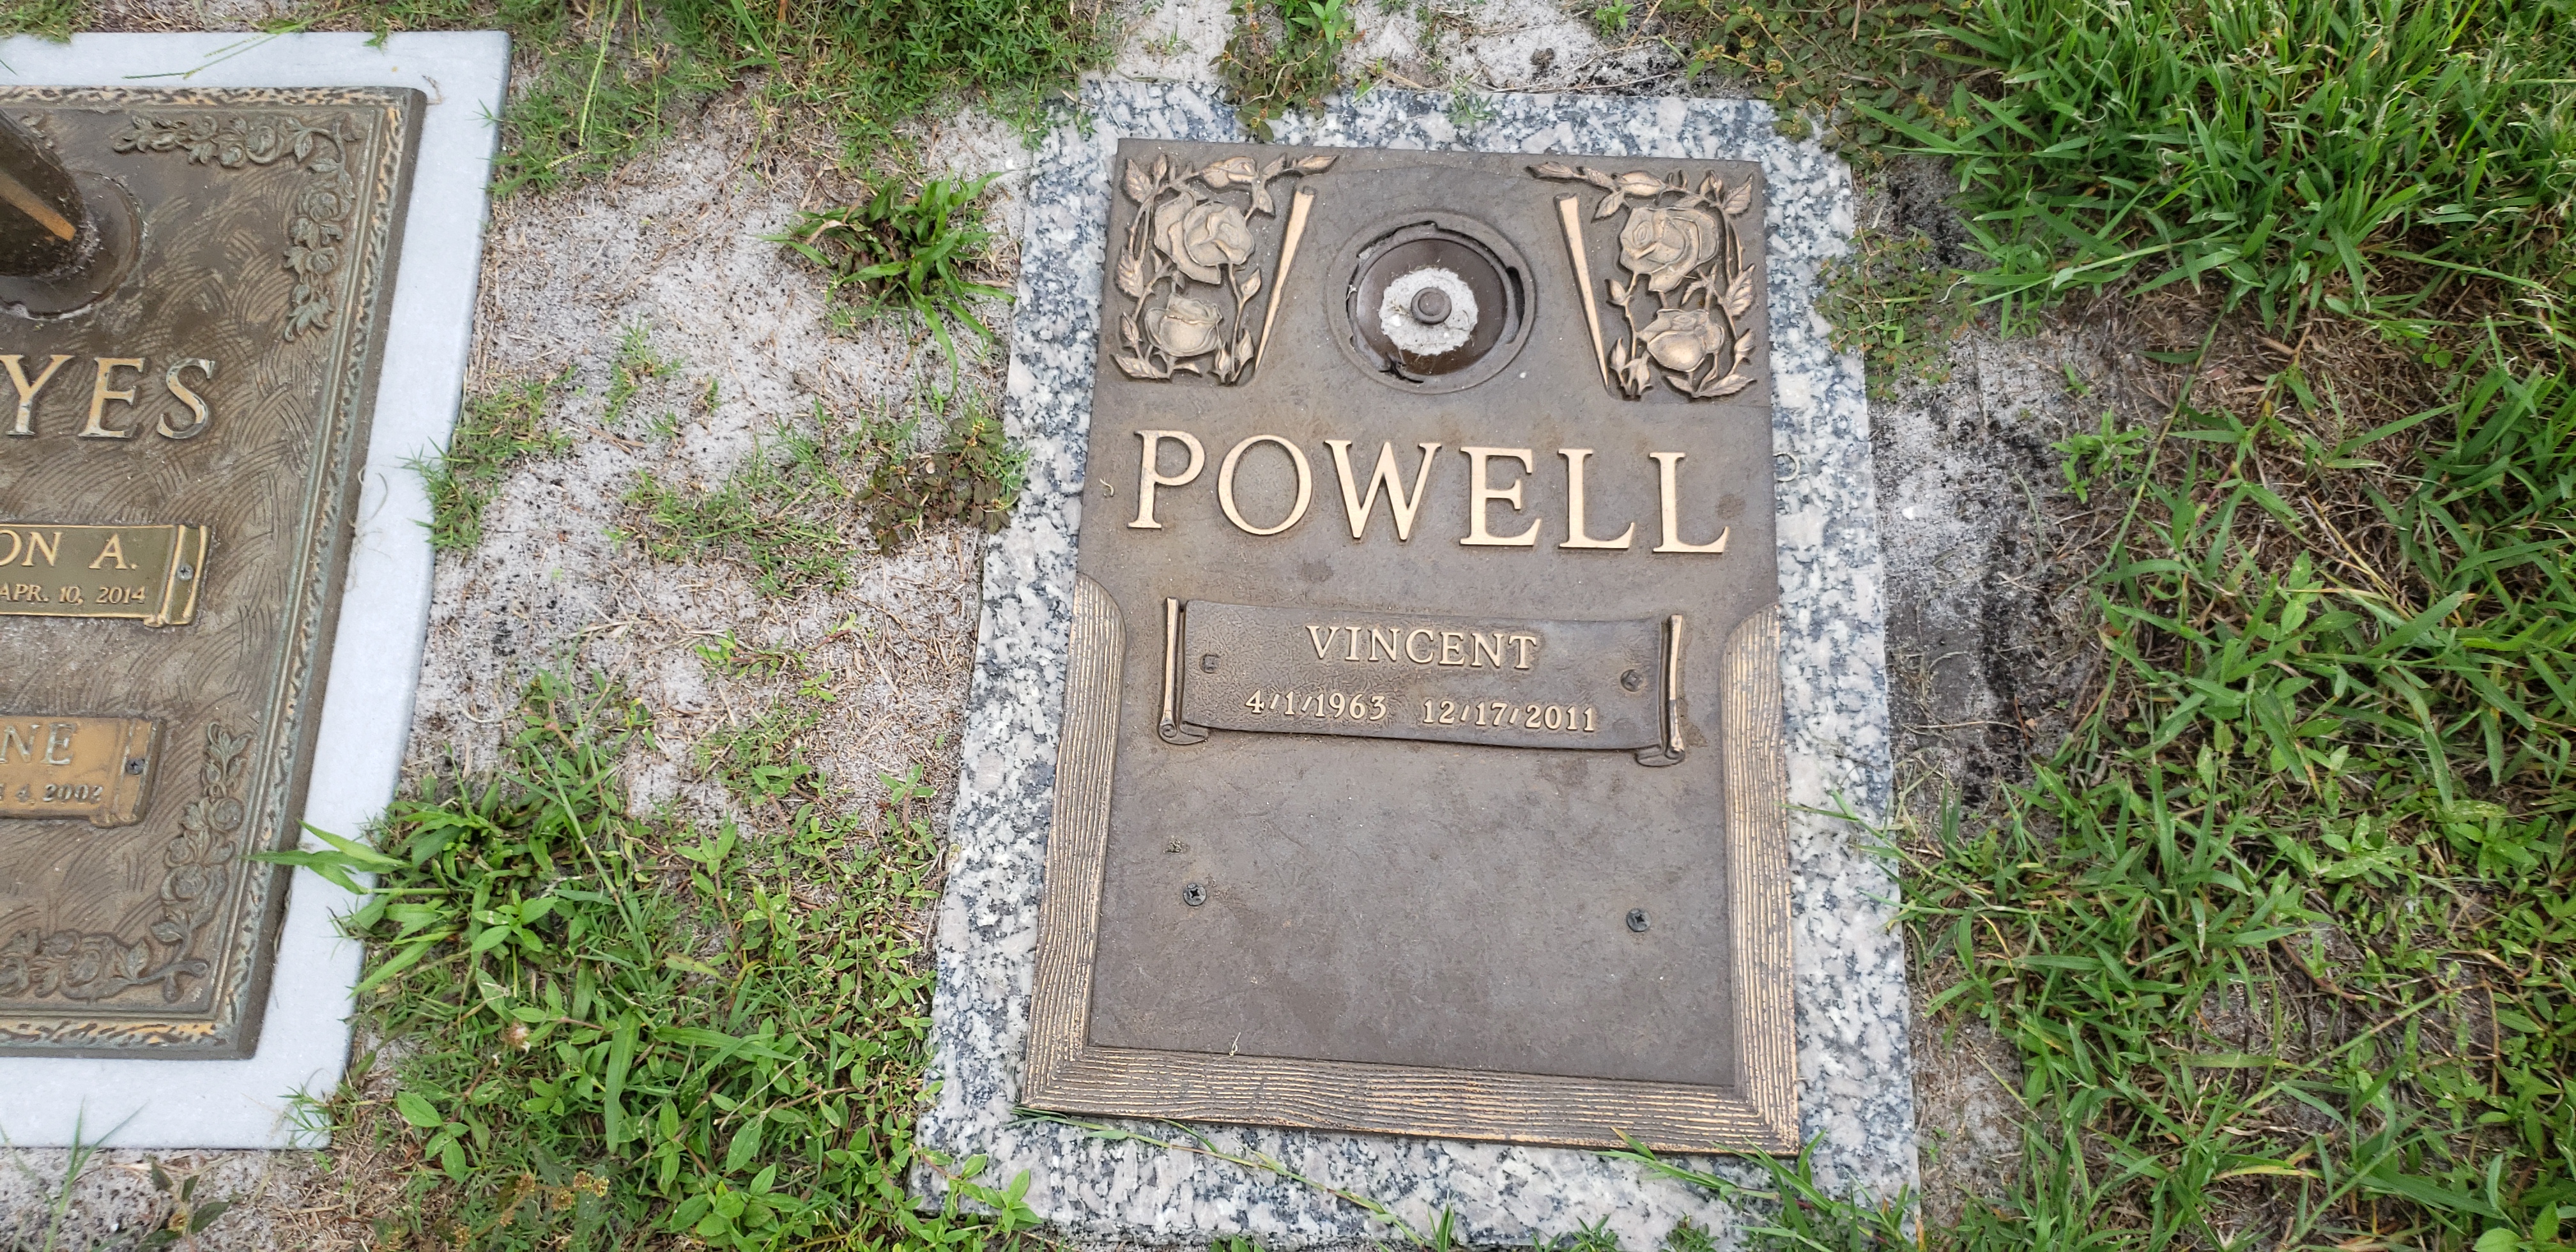 Vincent Powell